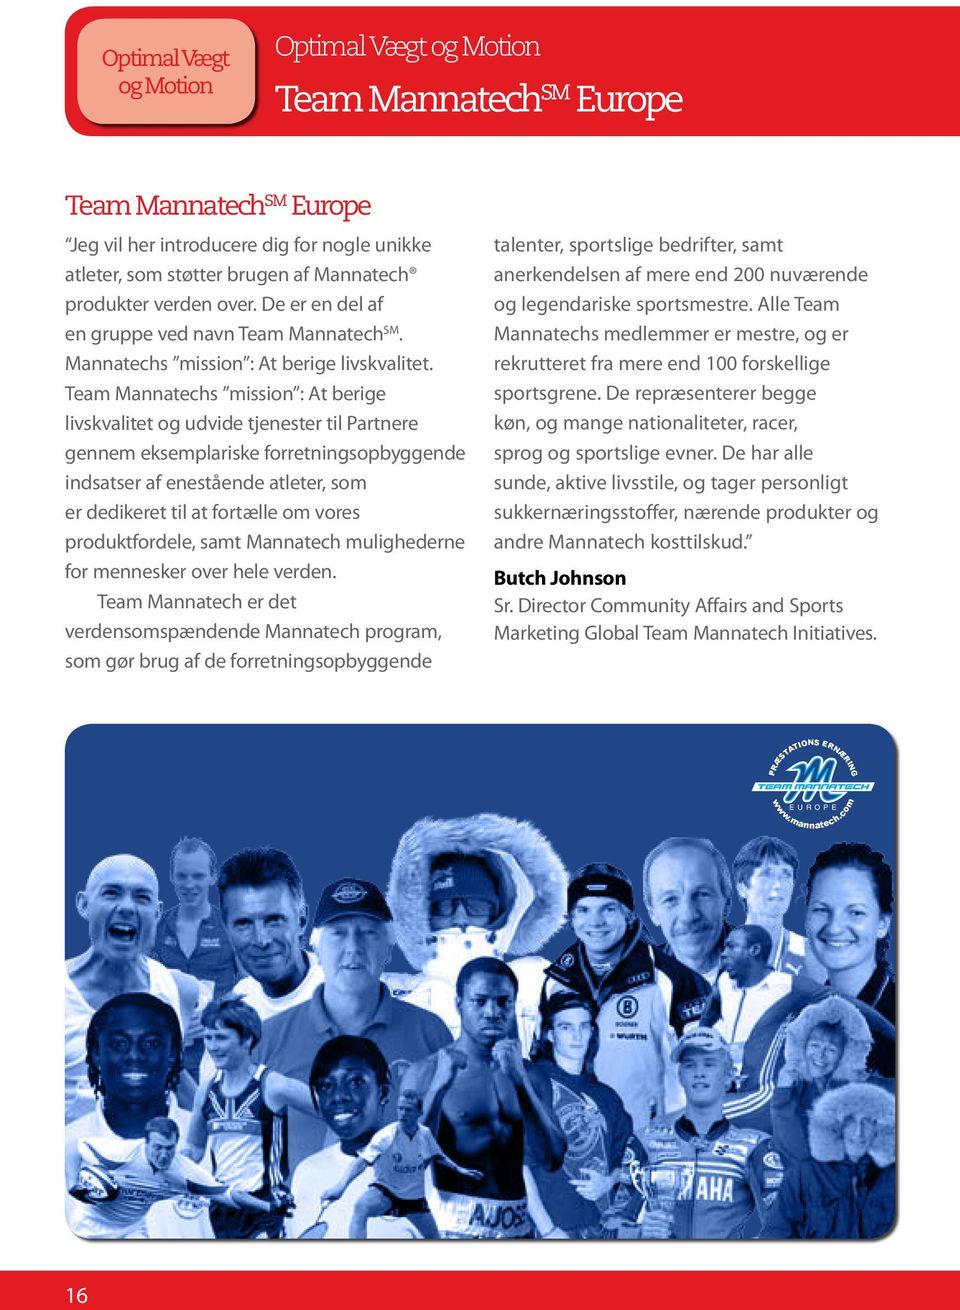 Team Mannatechs mission : At berige livskvalitet og udvide tjenester til Partnere gennem eksemplariske forretningsopbyggende indsatser af enestående atleter, som er dedikeret til at fortælle om vores